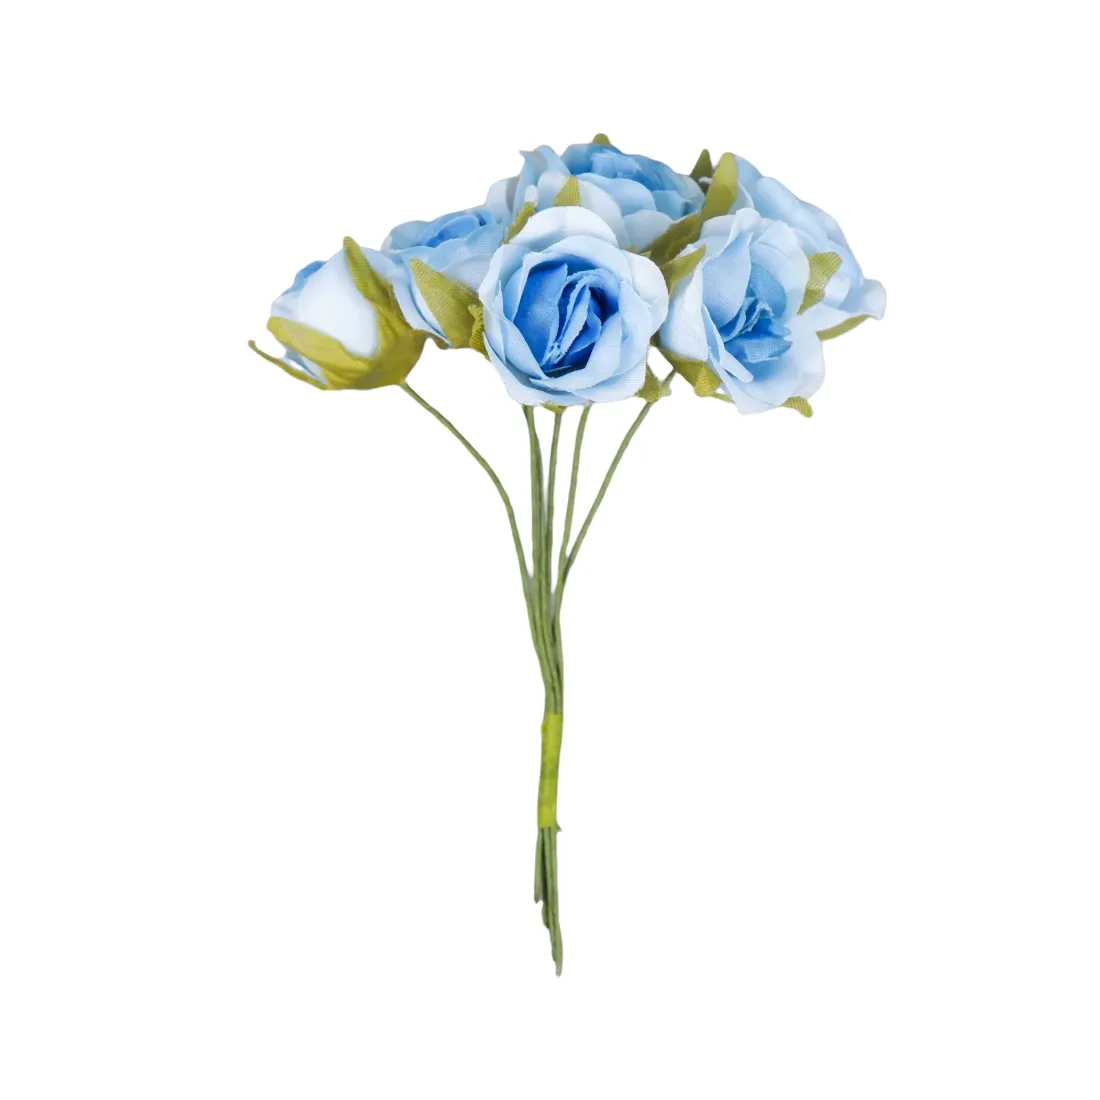 Фото Цветы для декорирования Роза Амадеус голубой 2 оттенка 1 букет=6 цветов 10 см